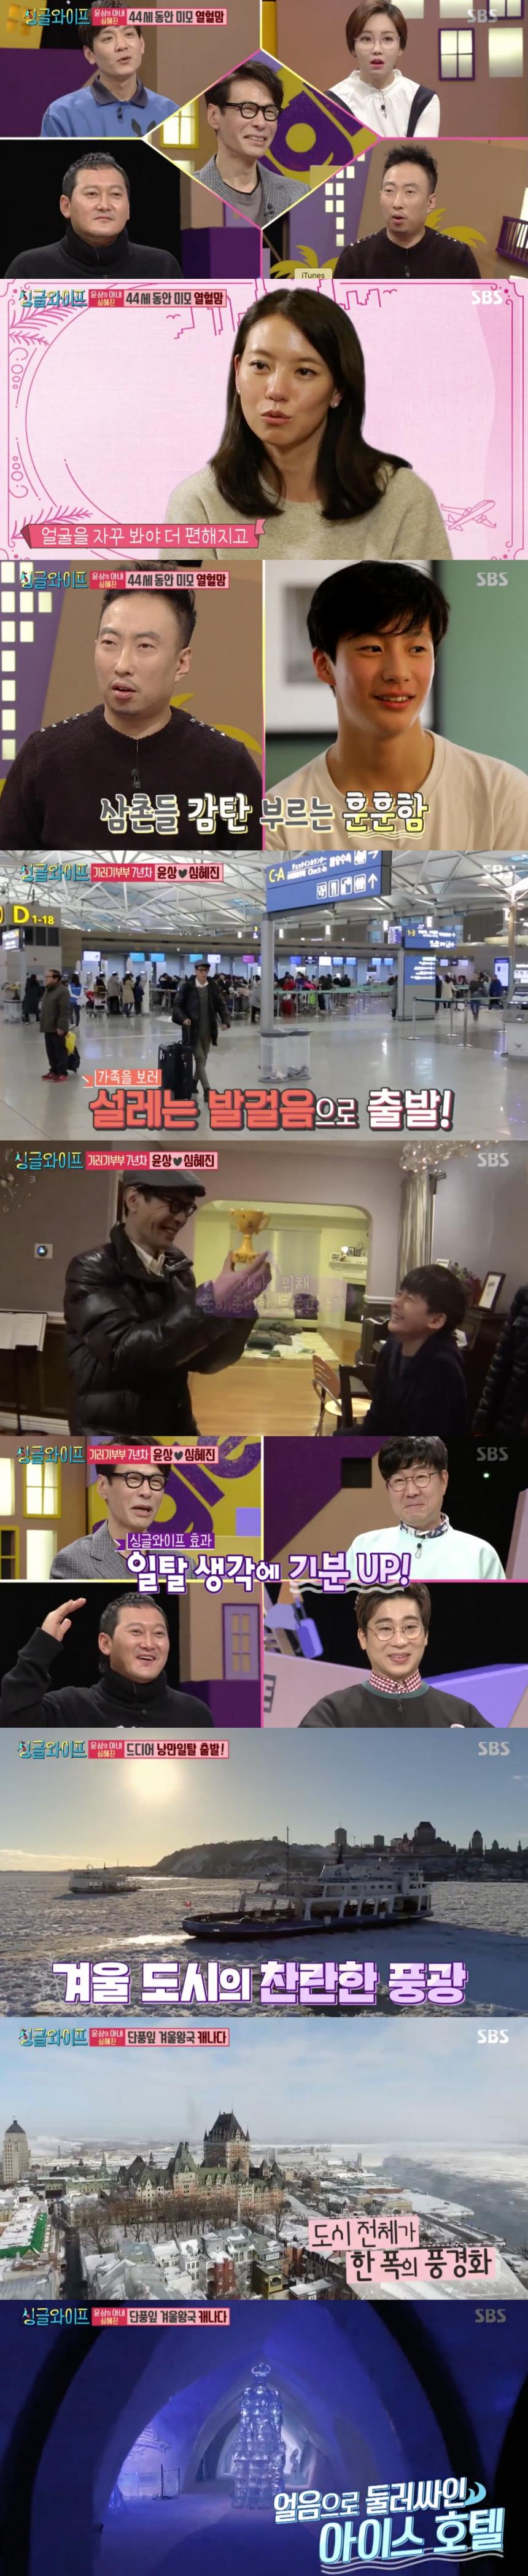 SBS ‘싱글와이프 시즌2’ 방송캡쳐